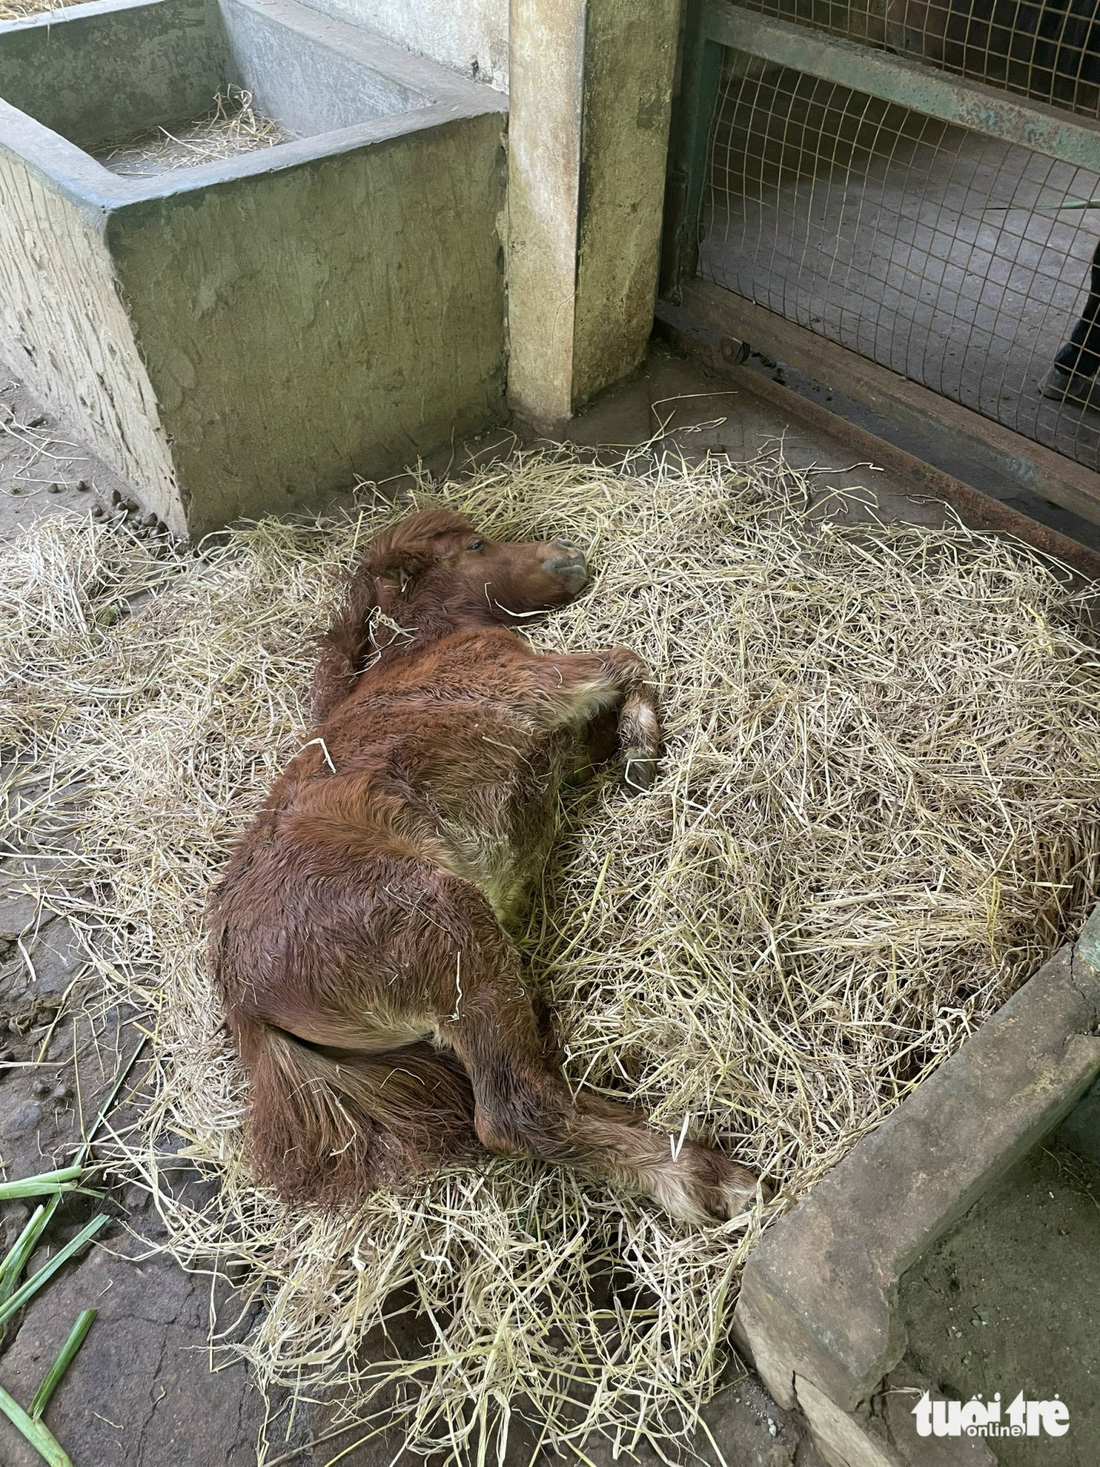 Ngựa lùn Vú Sữa mới được sinh tại Thảo cầm viên Sài Gòn - Ảnh: TRUNG TRỰC